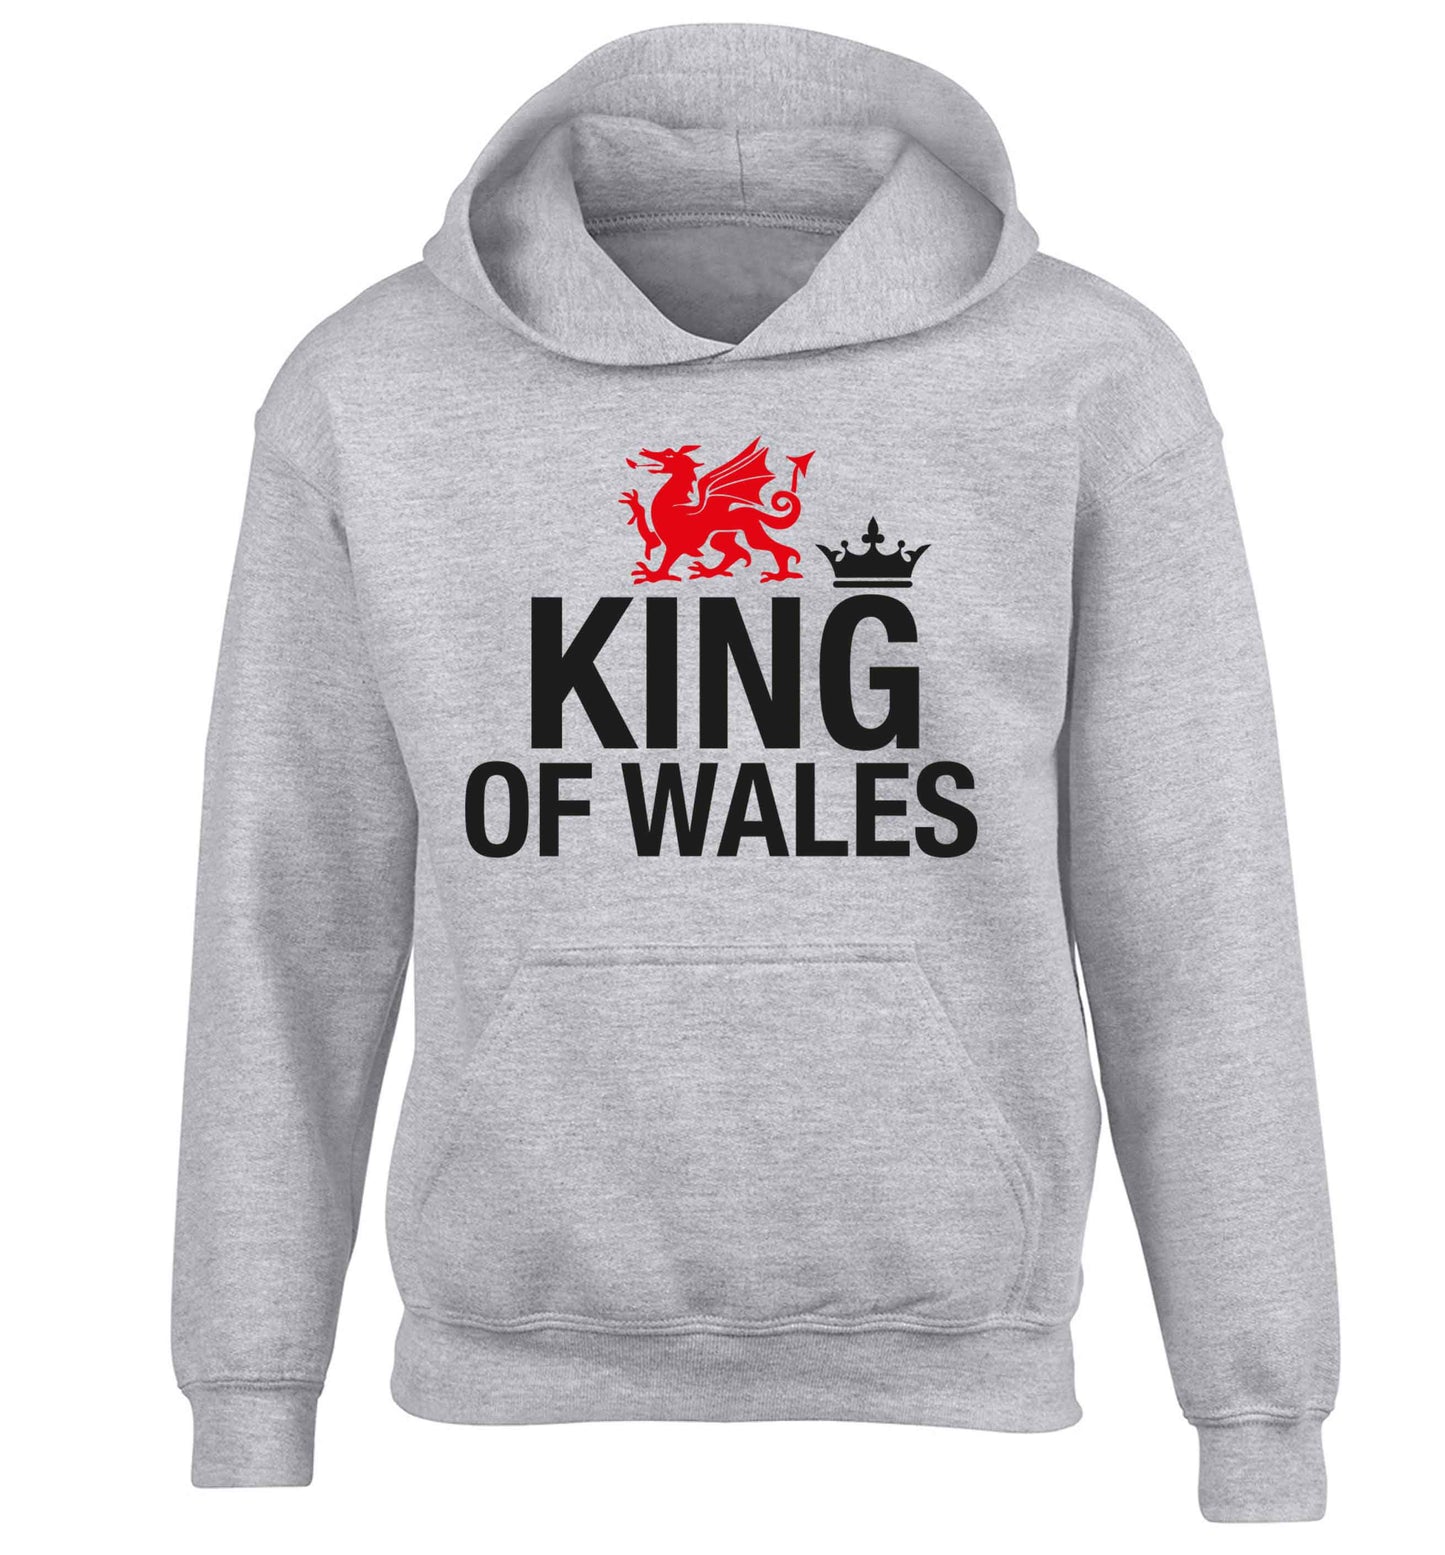 King of Wales children's grey hoodie 12-13 Years